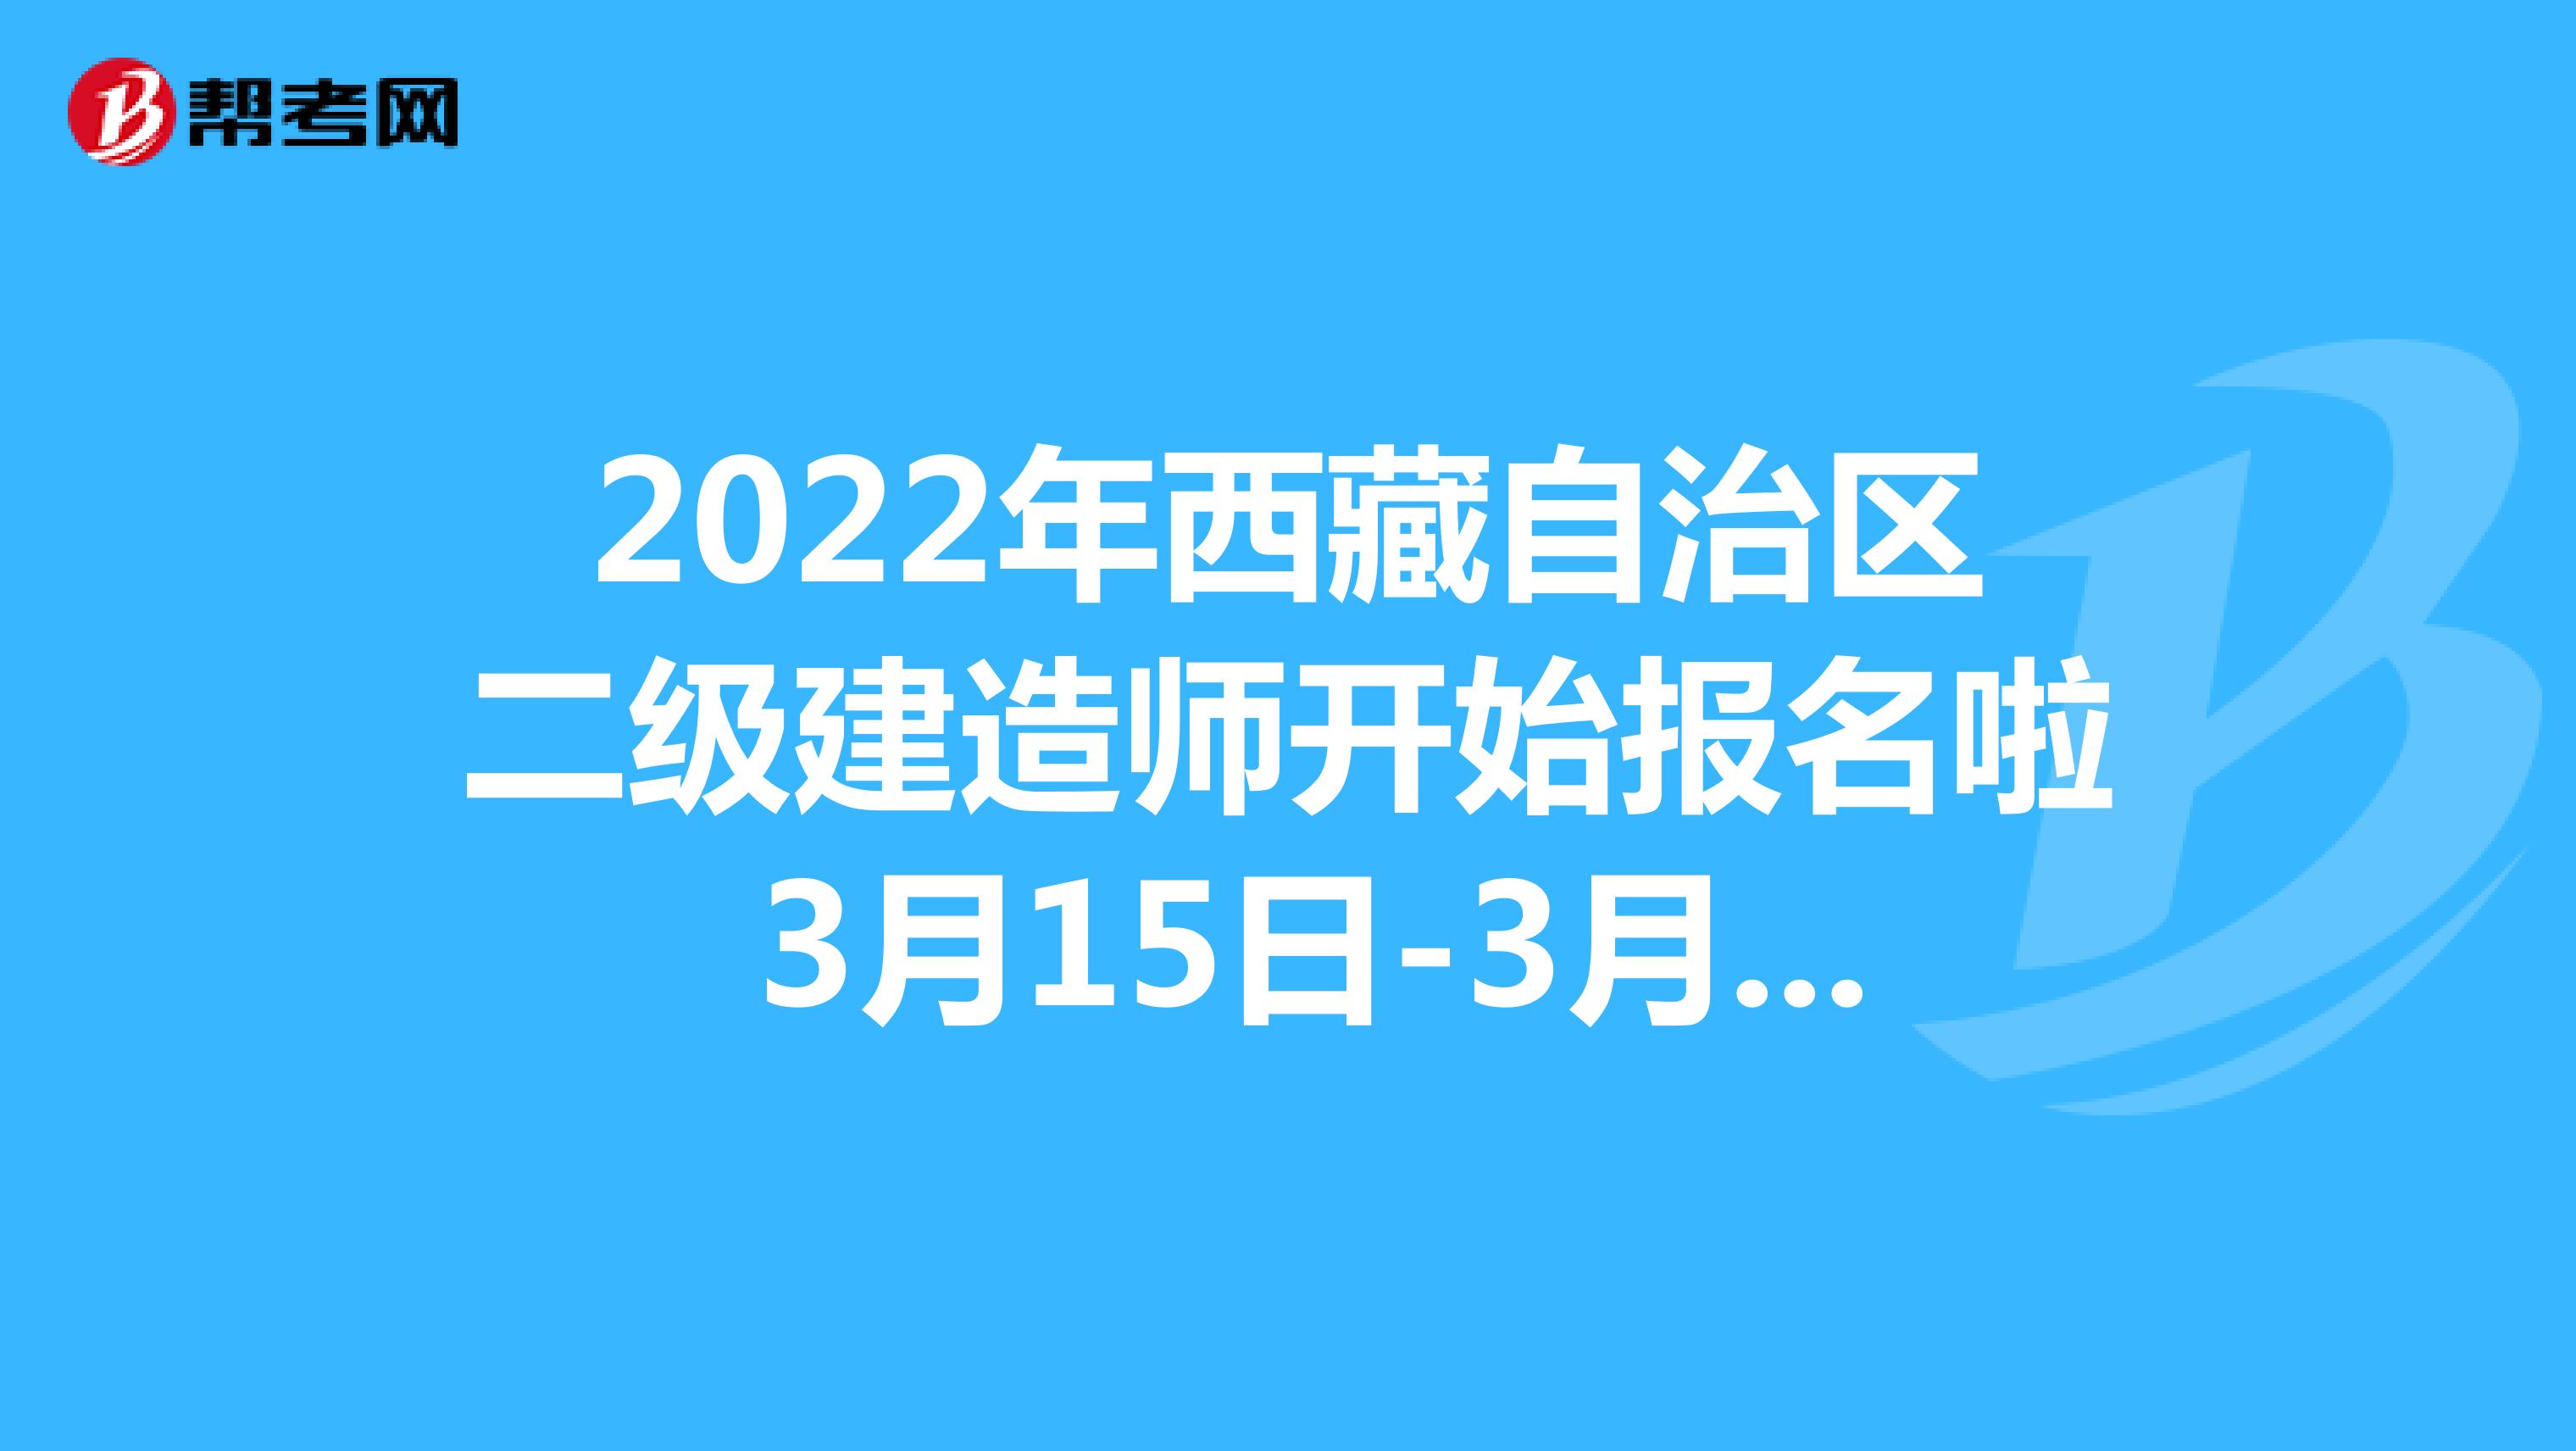 2022年西藏自治区二级建造师开始报名啦 3月15日-3月28日